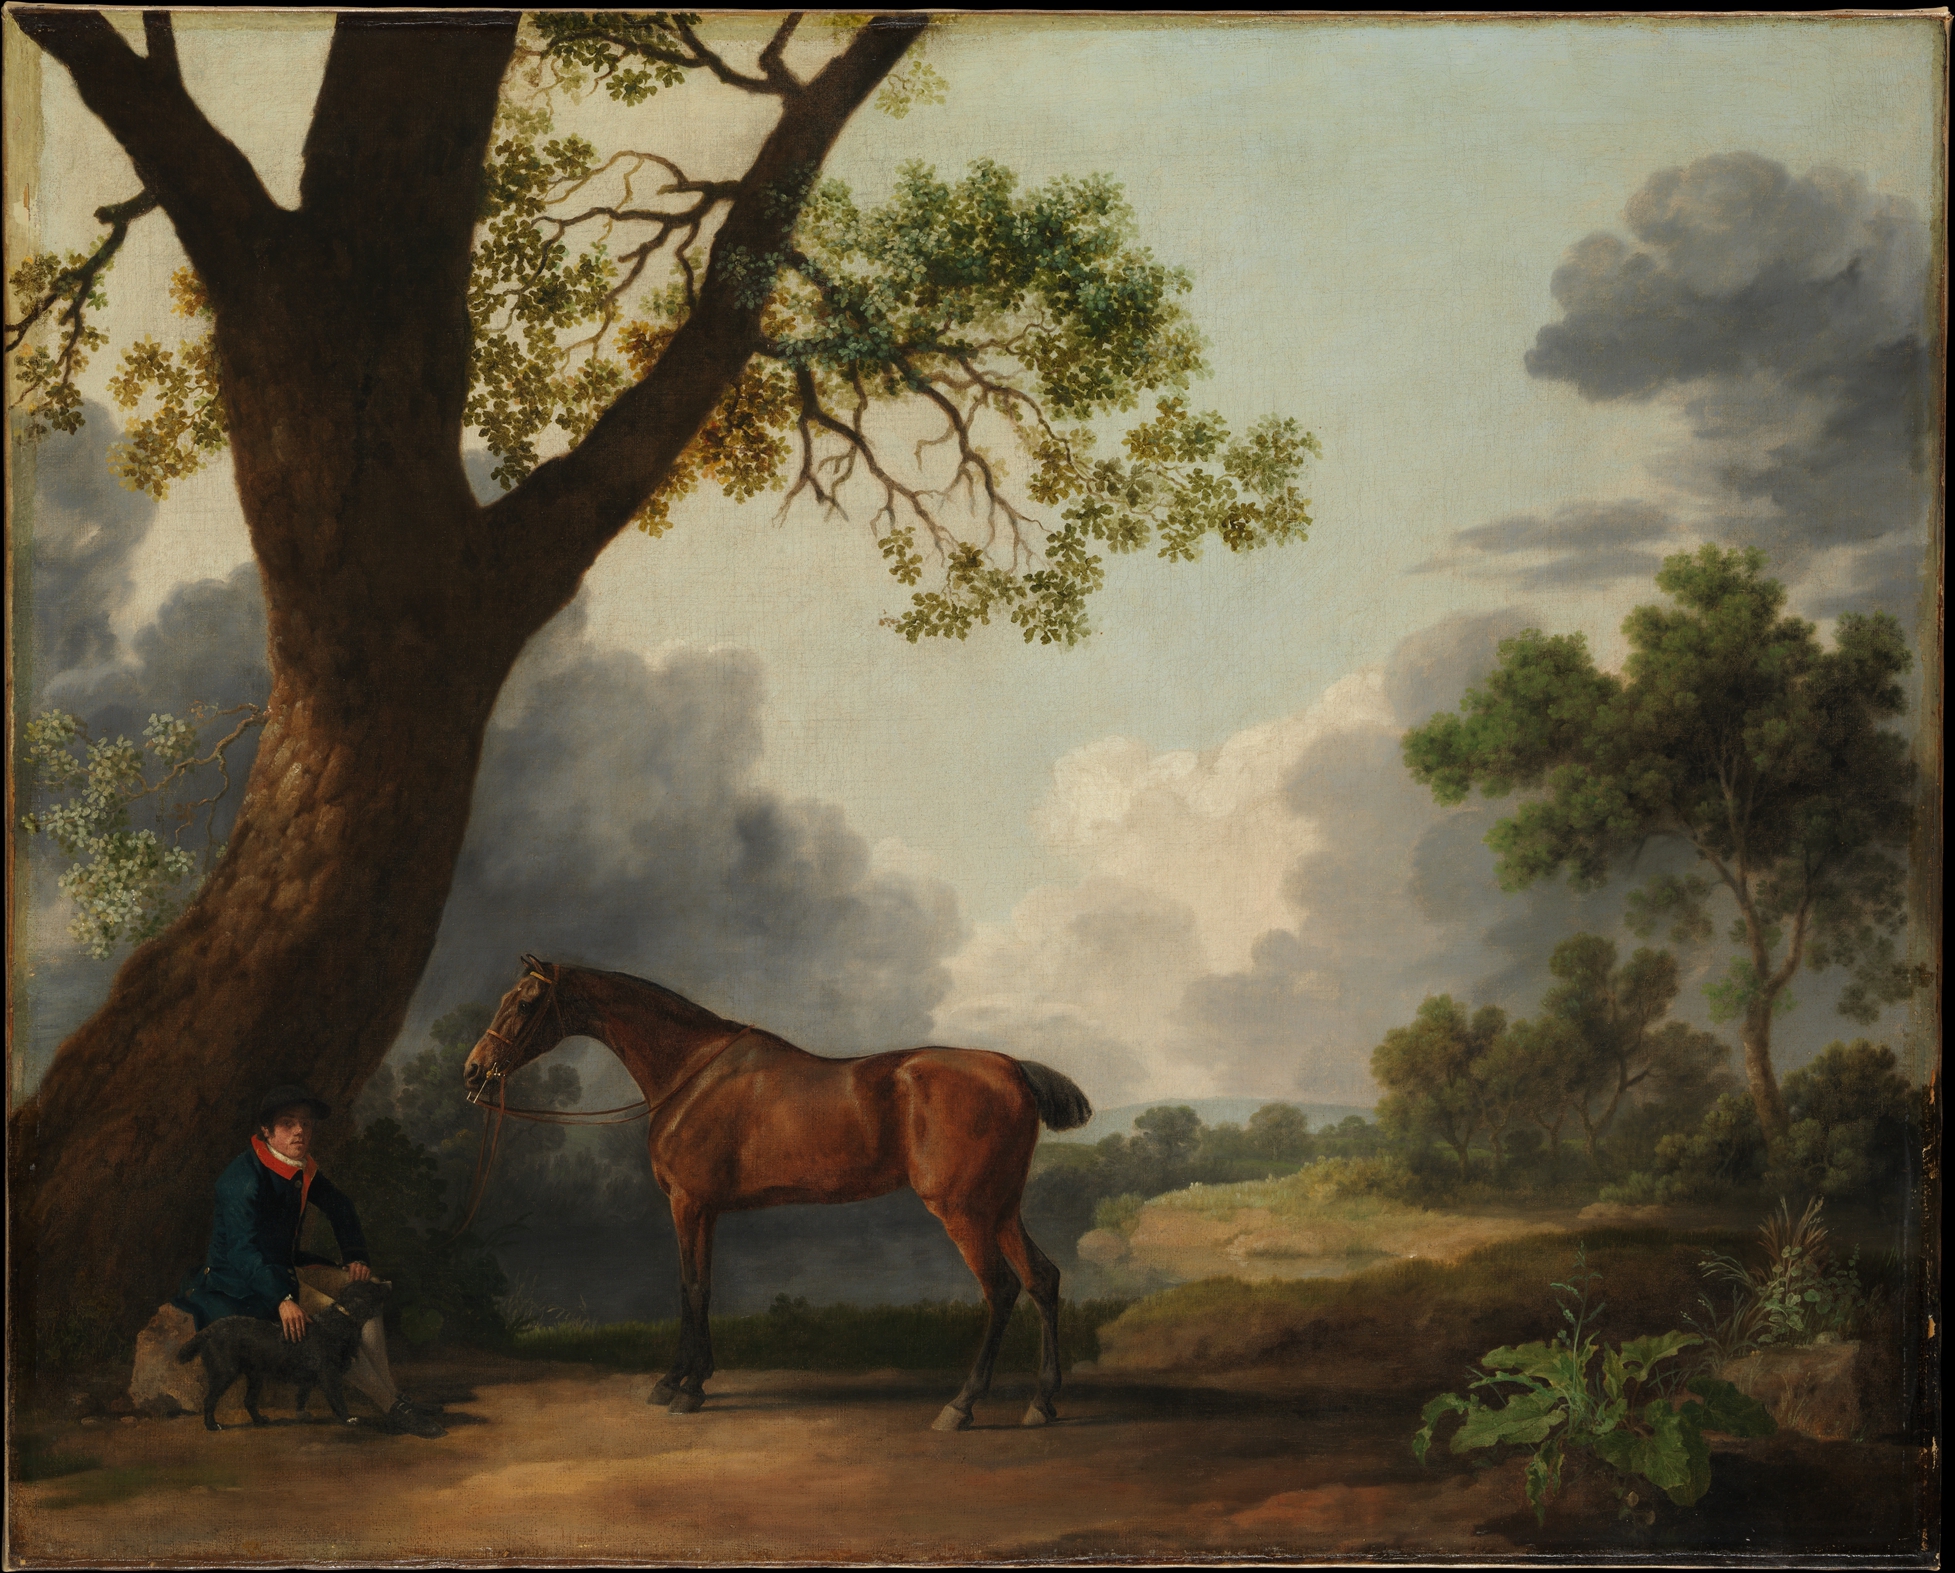 多塞特公爵三世在打猎 by 乔治 斯塔布斯 - 1768年 - 101.6 x 126.4厘米 